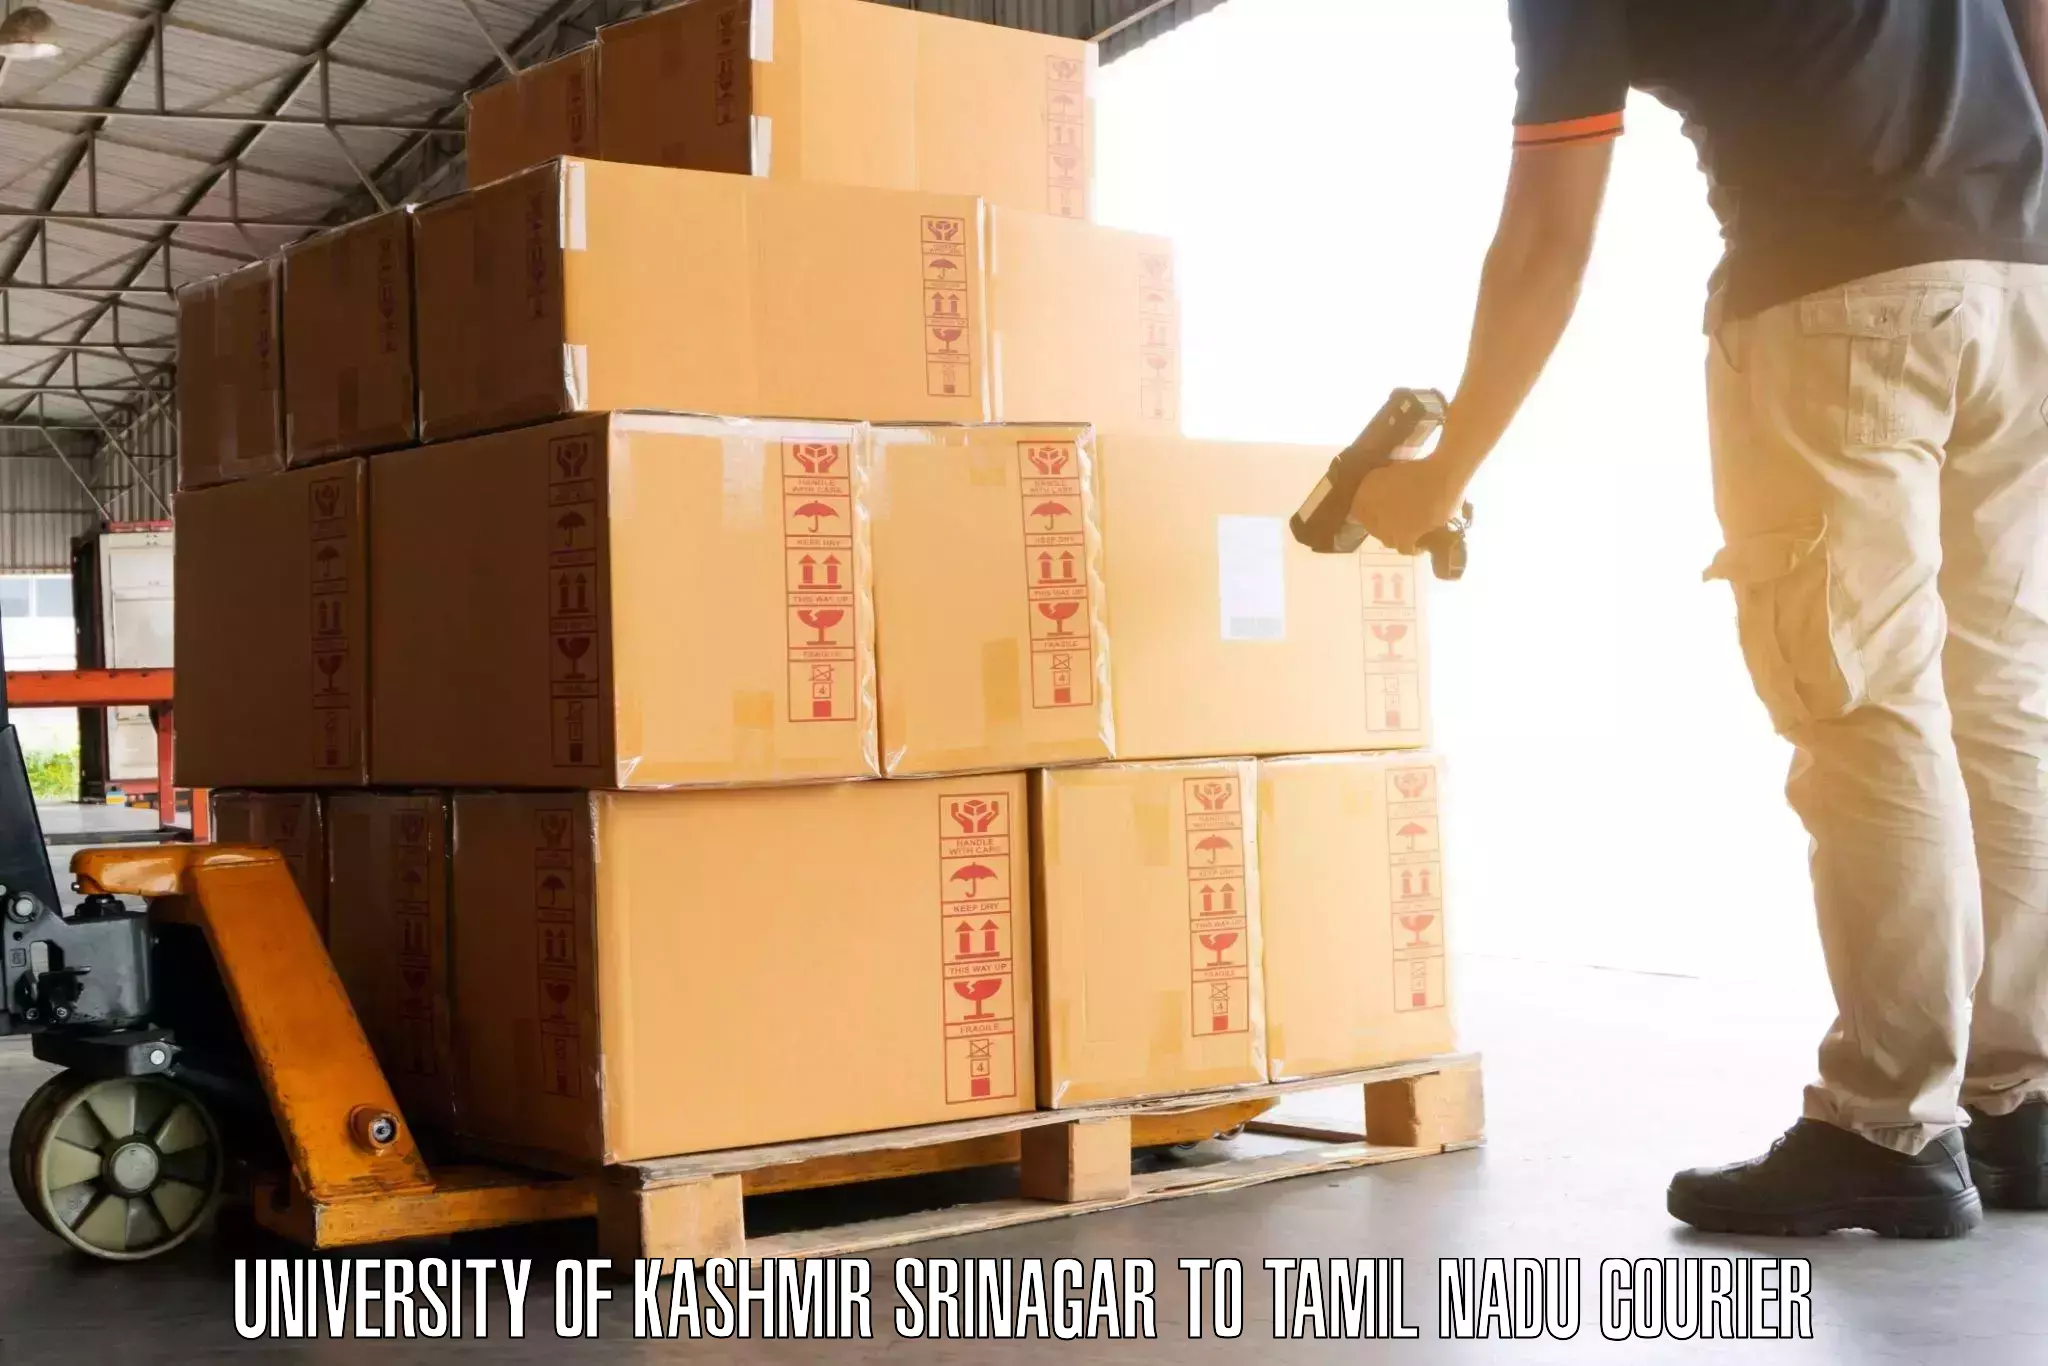 Luggage shipping strategy University of Kashmir Srinagar to Rathinasabapathy Puram